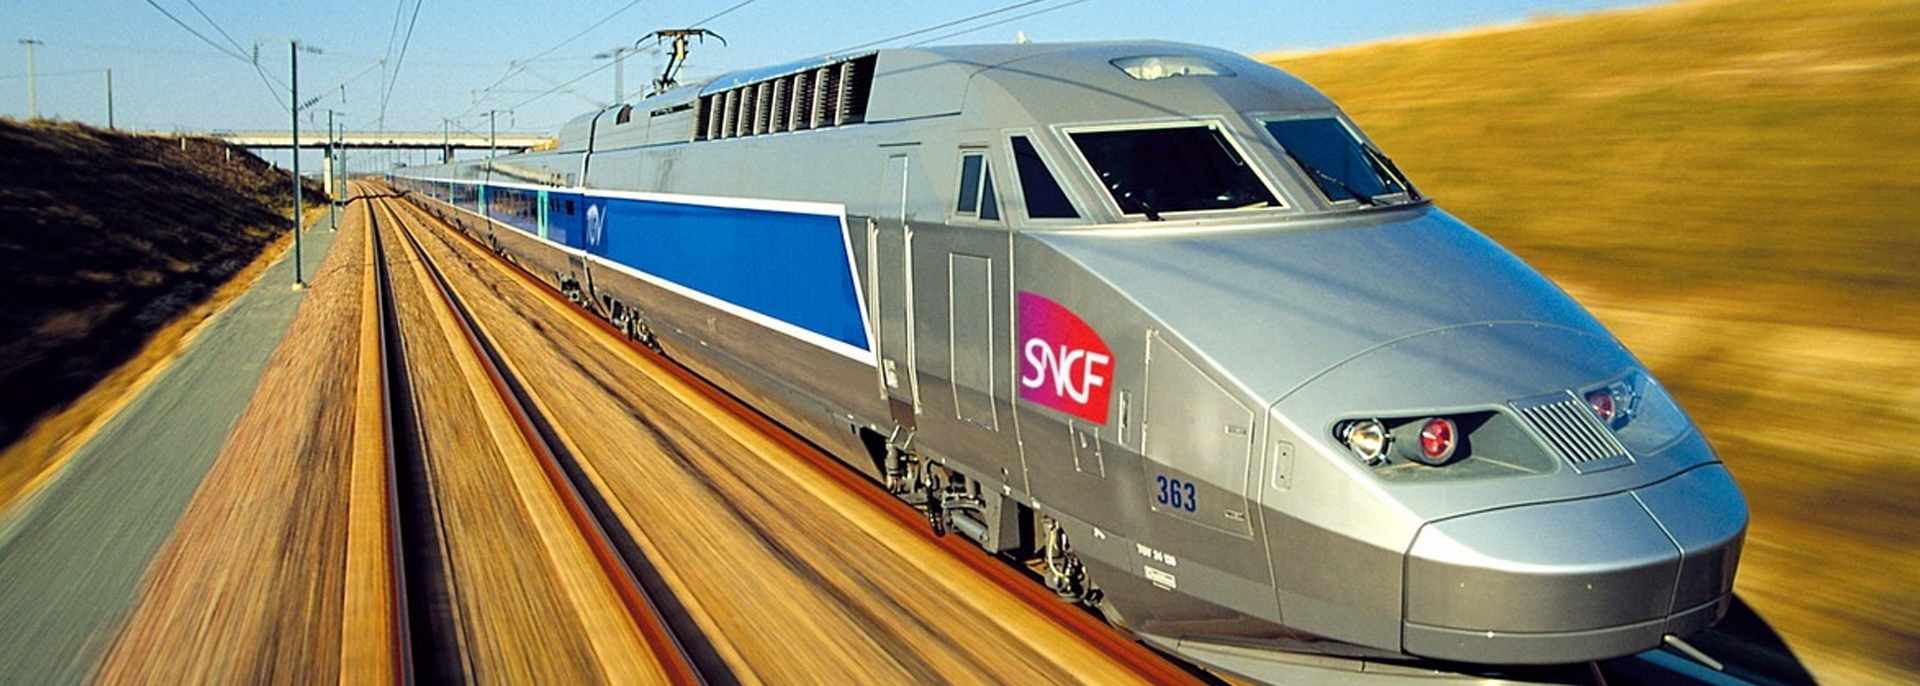 Gare SNCF de saint-tropez